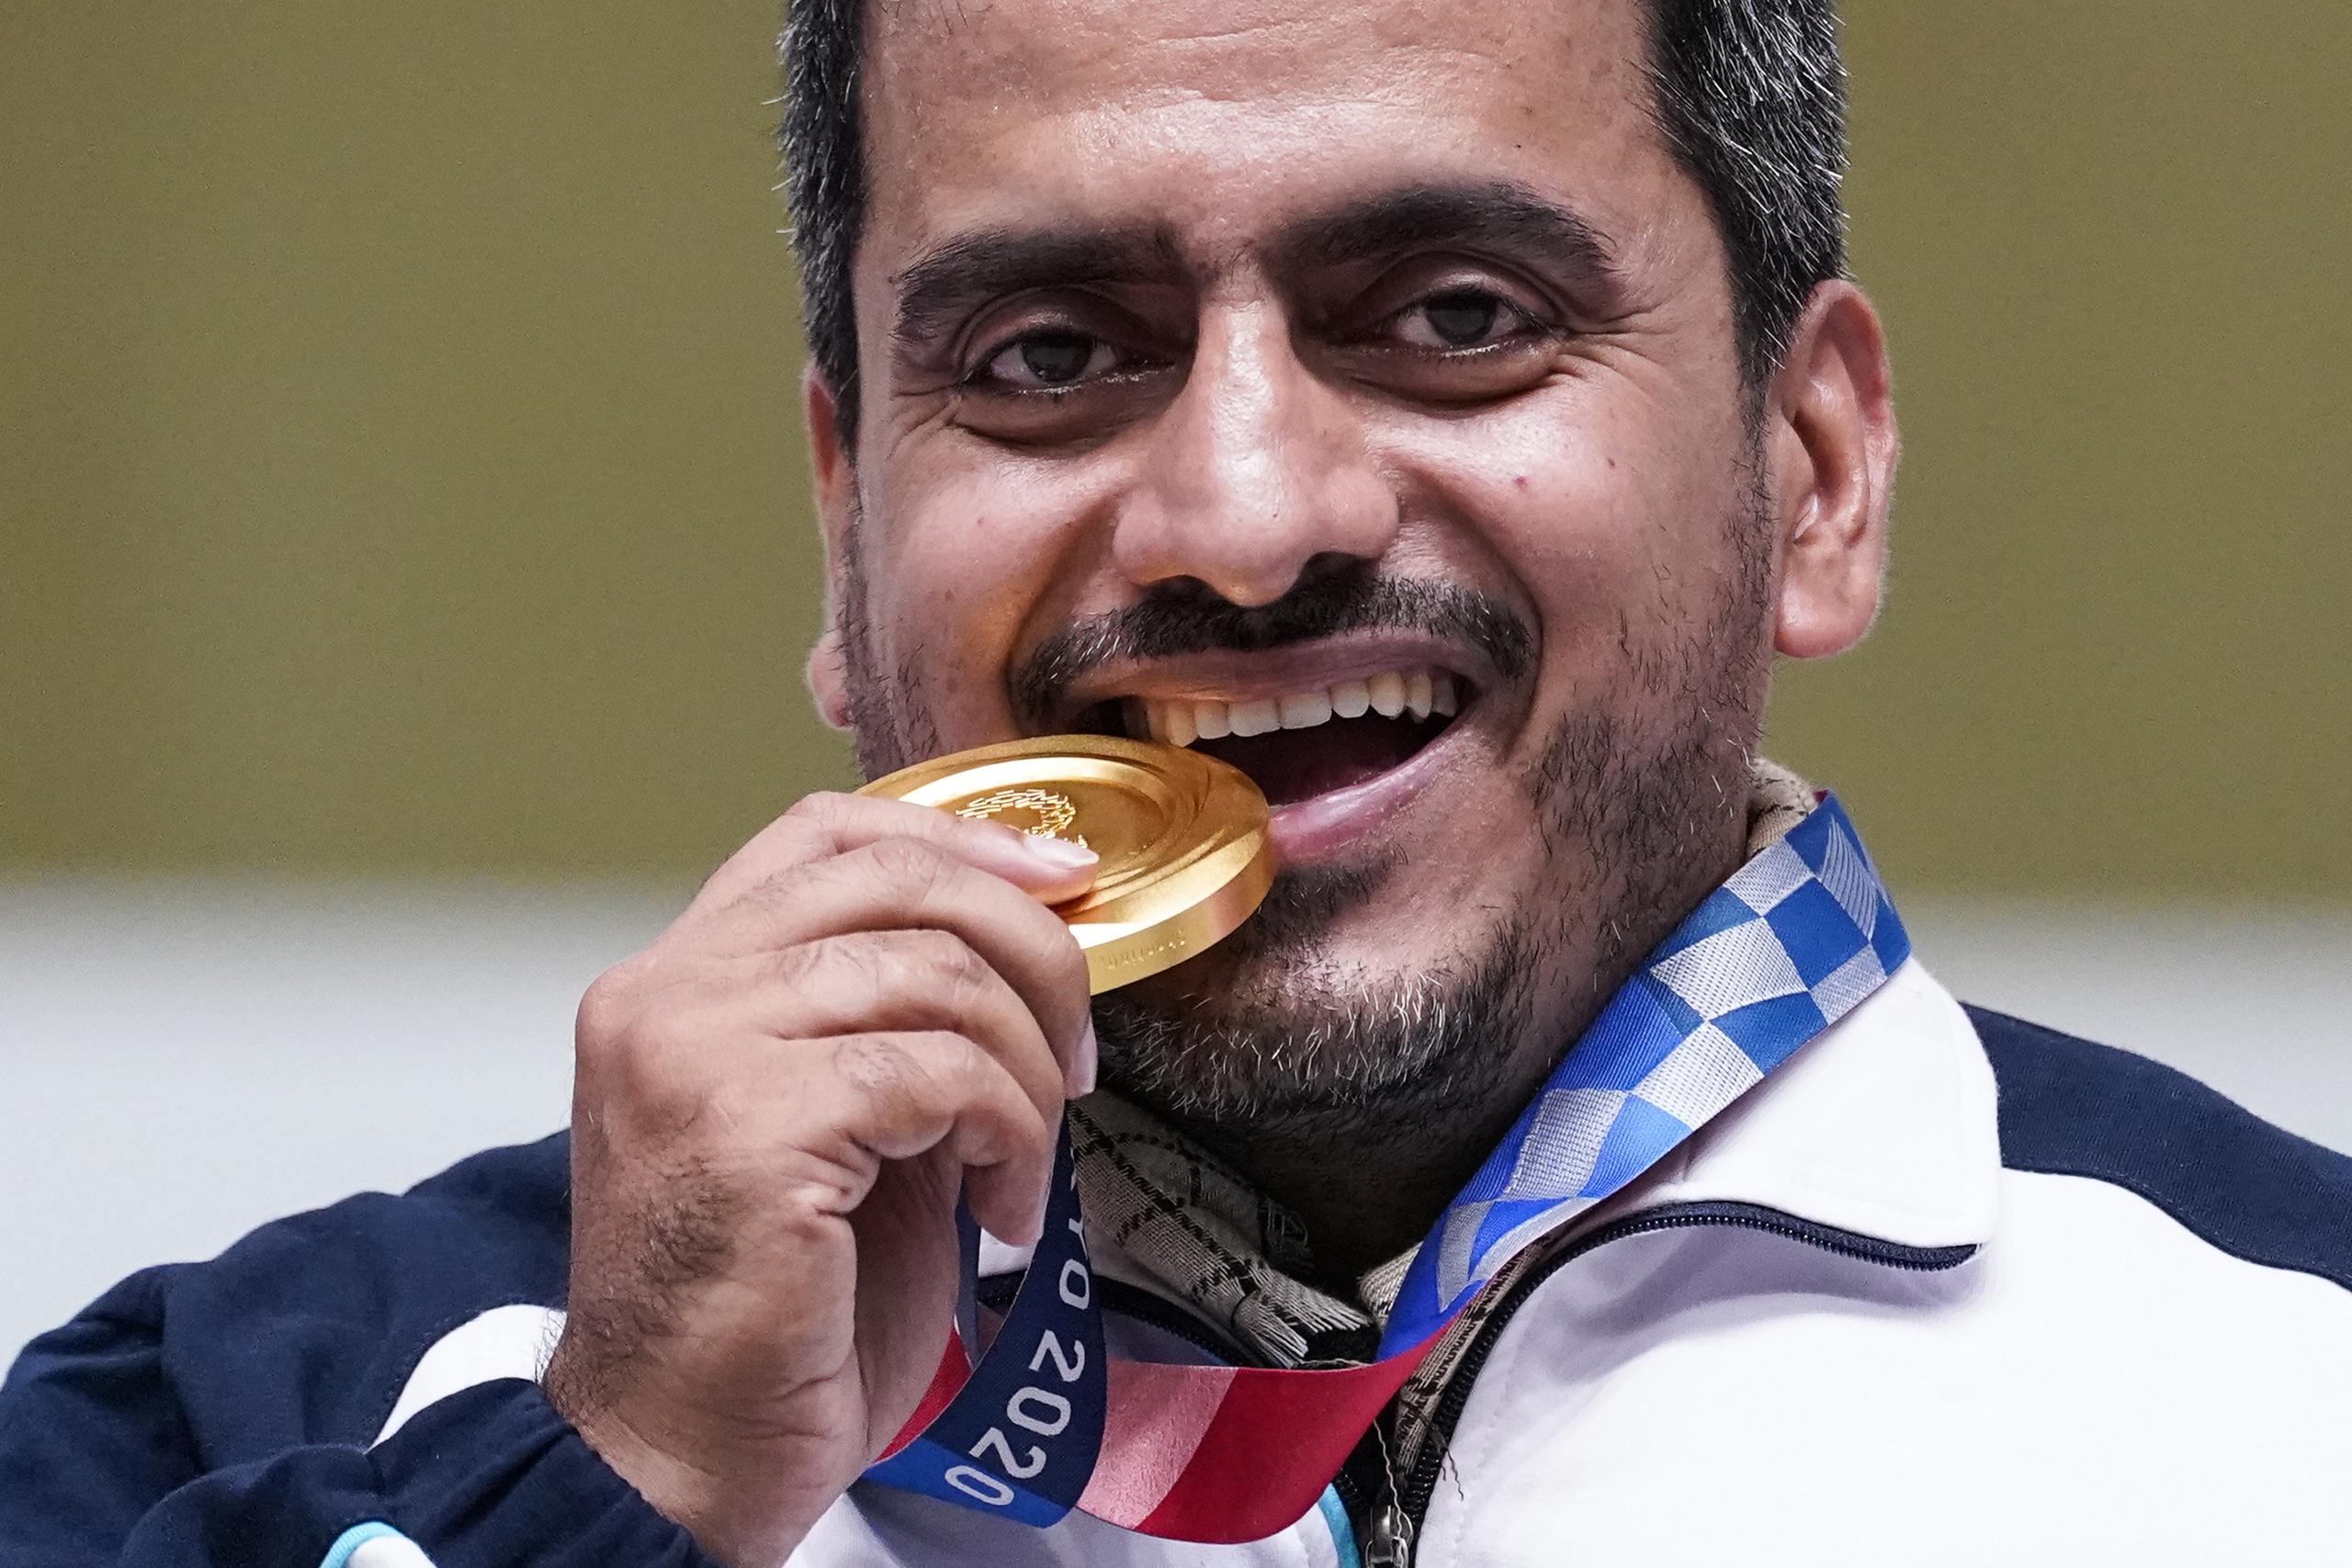 El iraní Javad Foroughi celebra su medalla de oro en la competencia de tiro con pistola de aire.